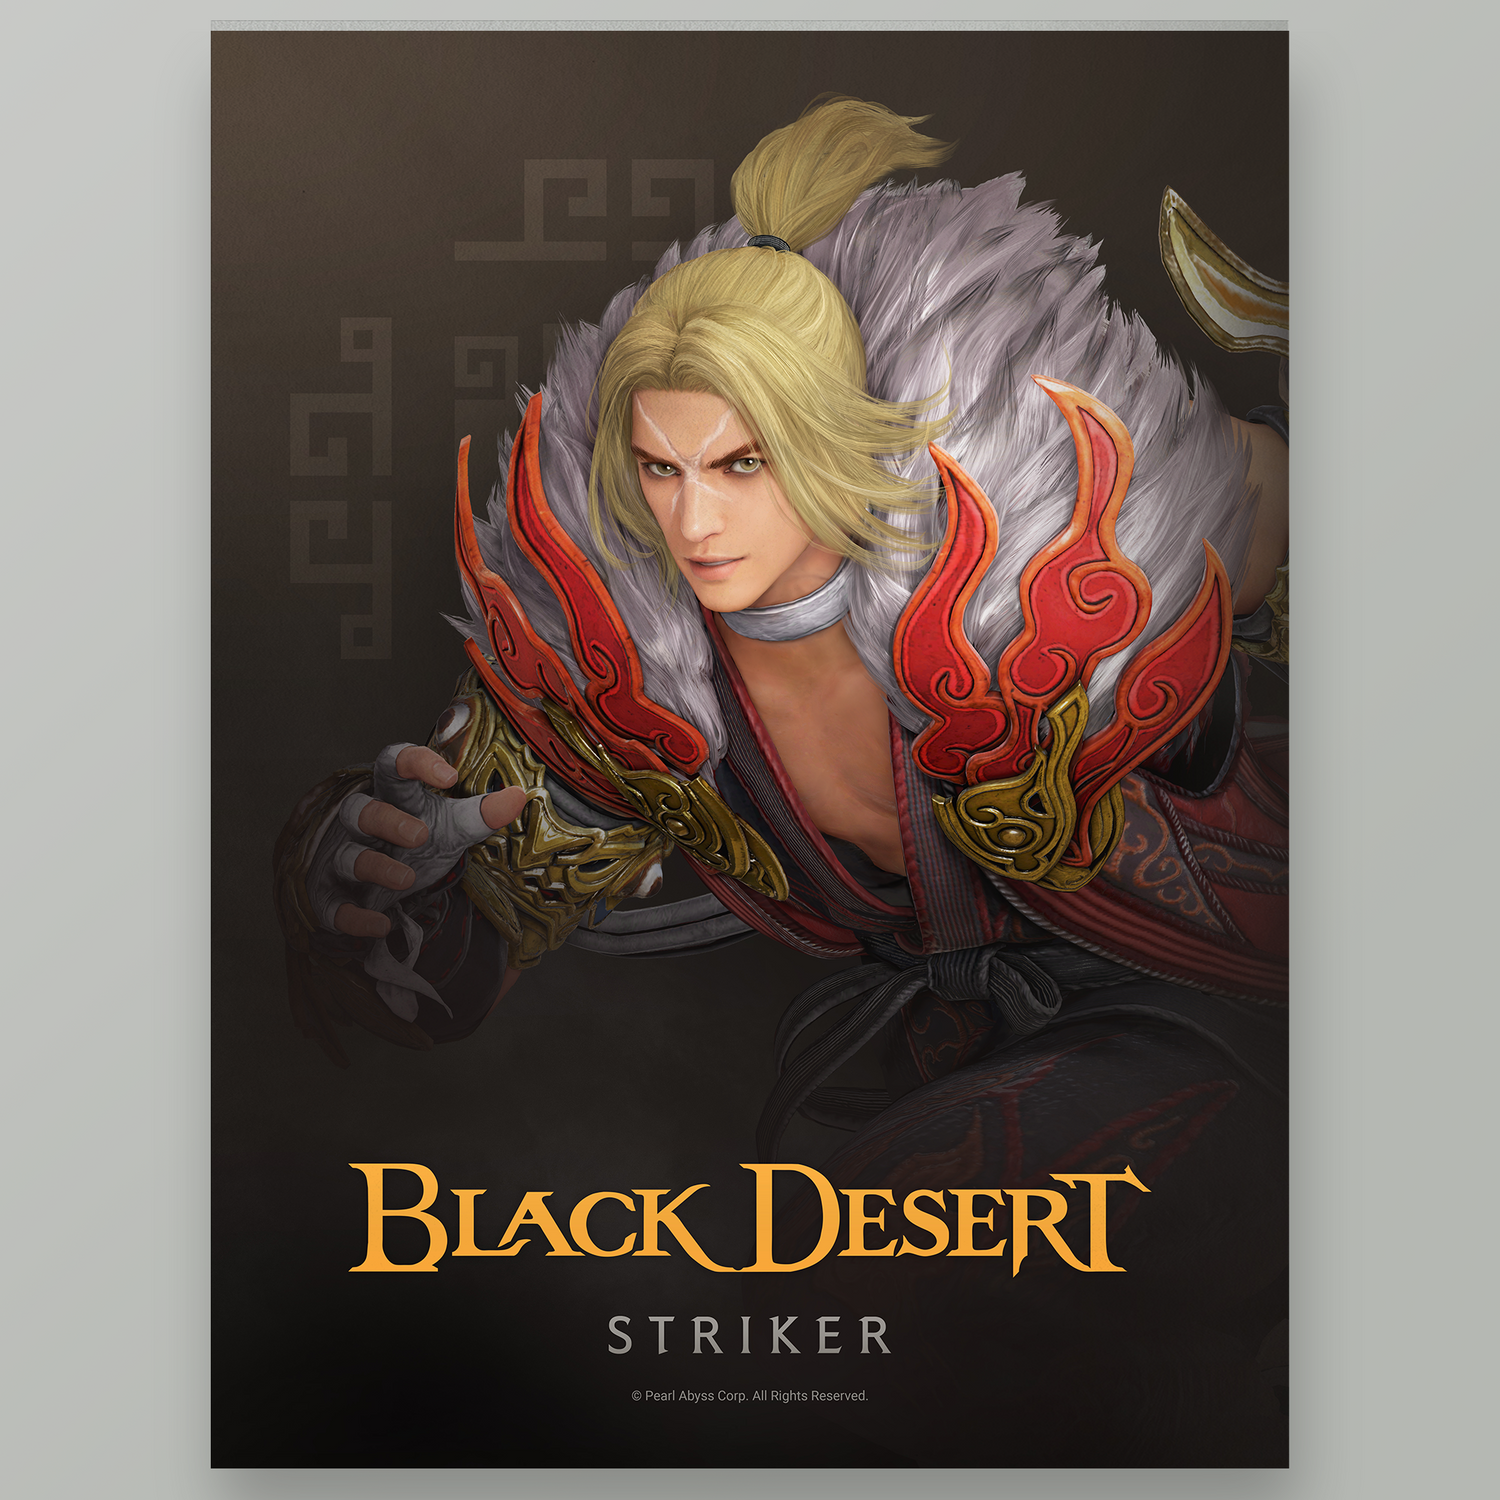 Black Desert Striker Poster